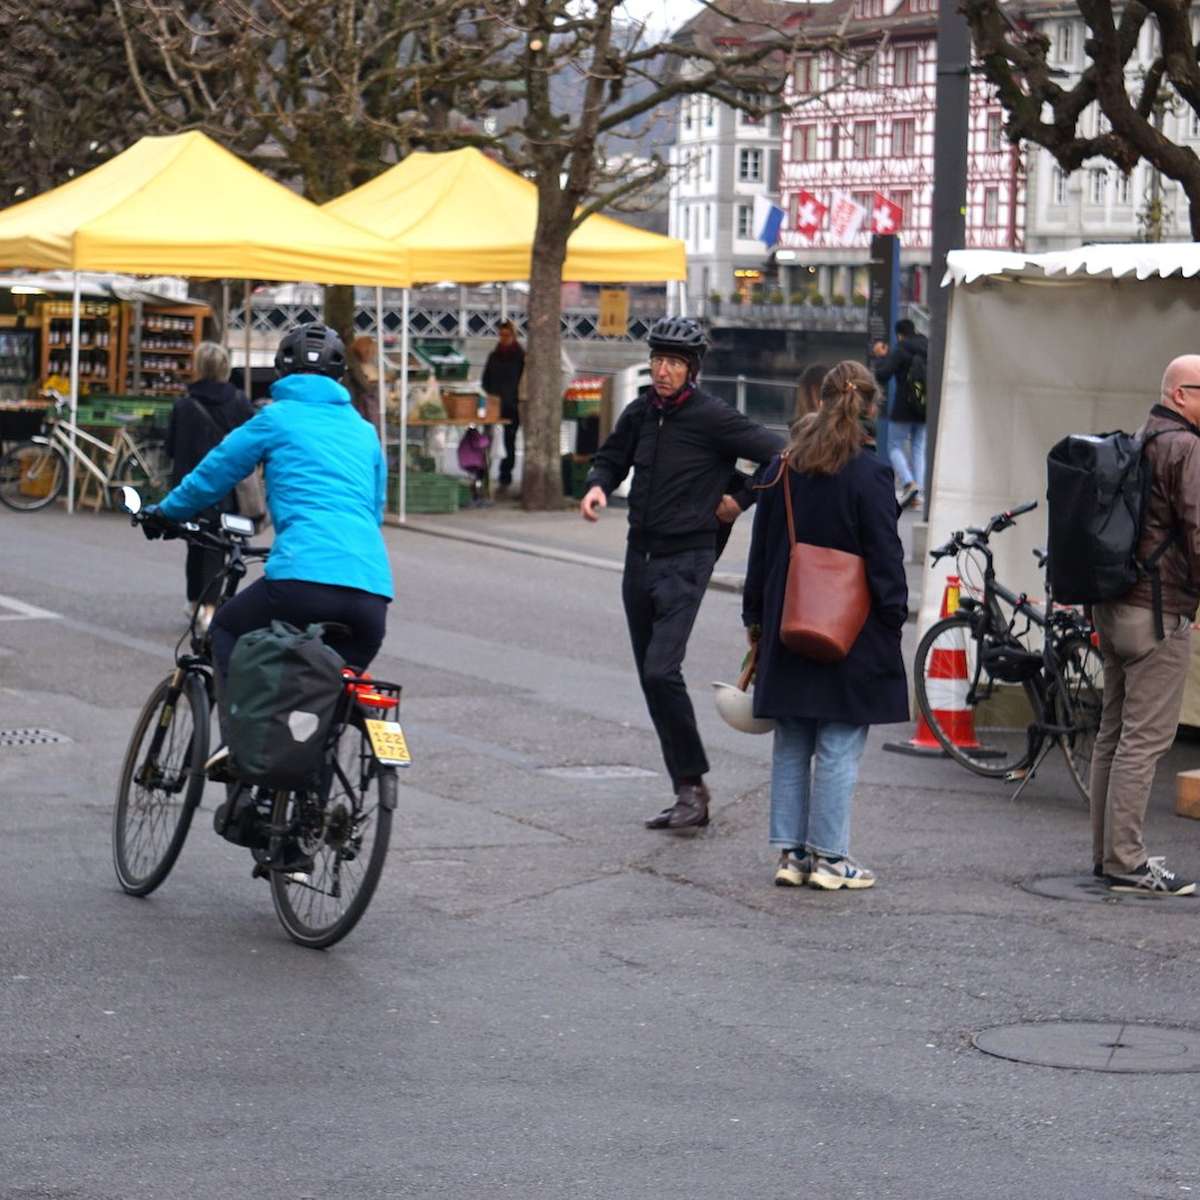 Achtung Velo! Wochenmarkt Luzern ist ein Spiessrutenlauf